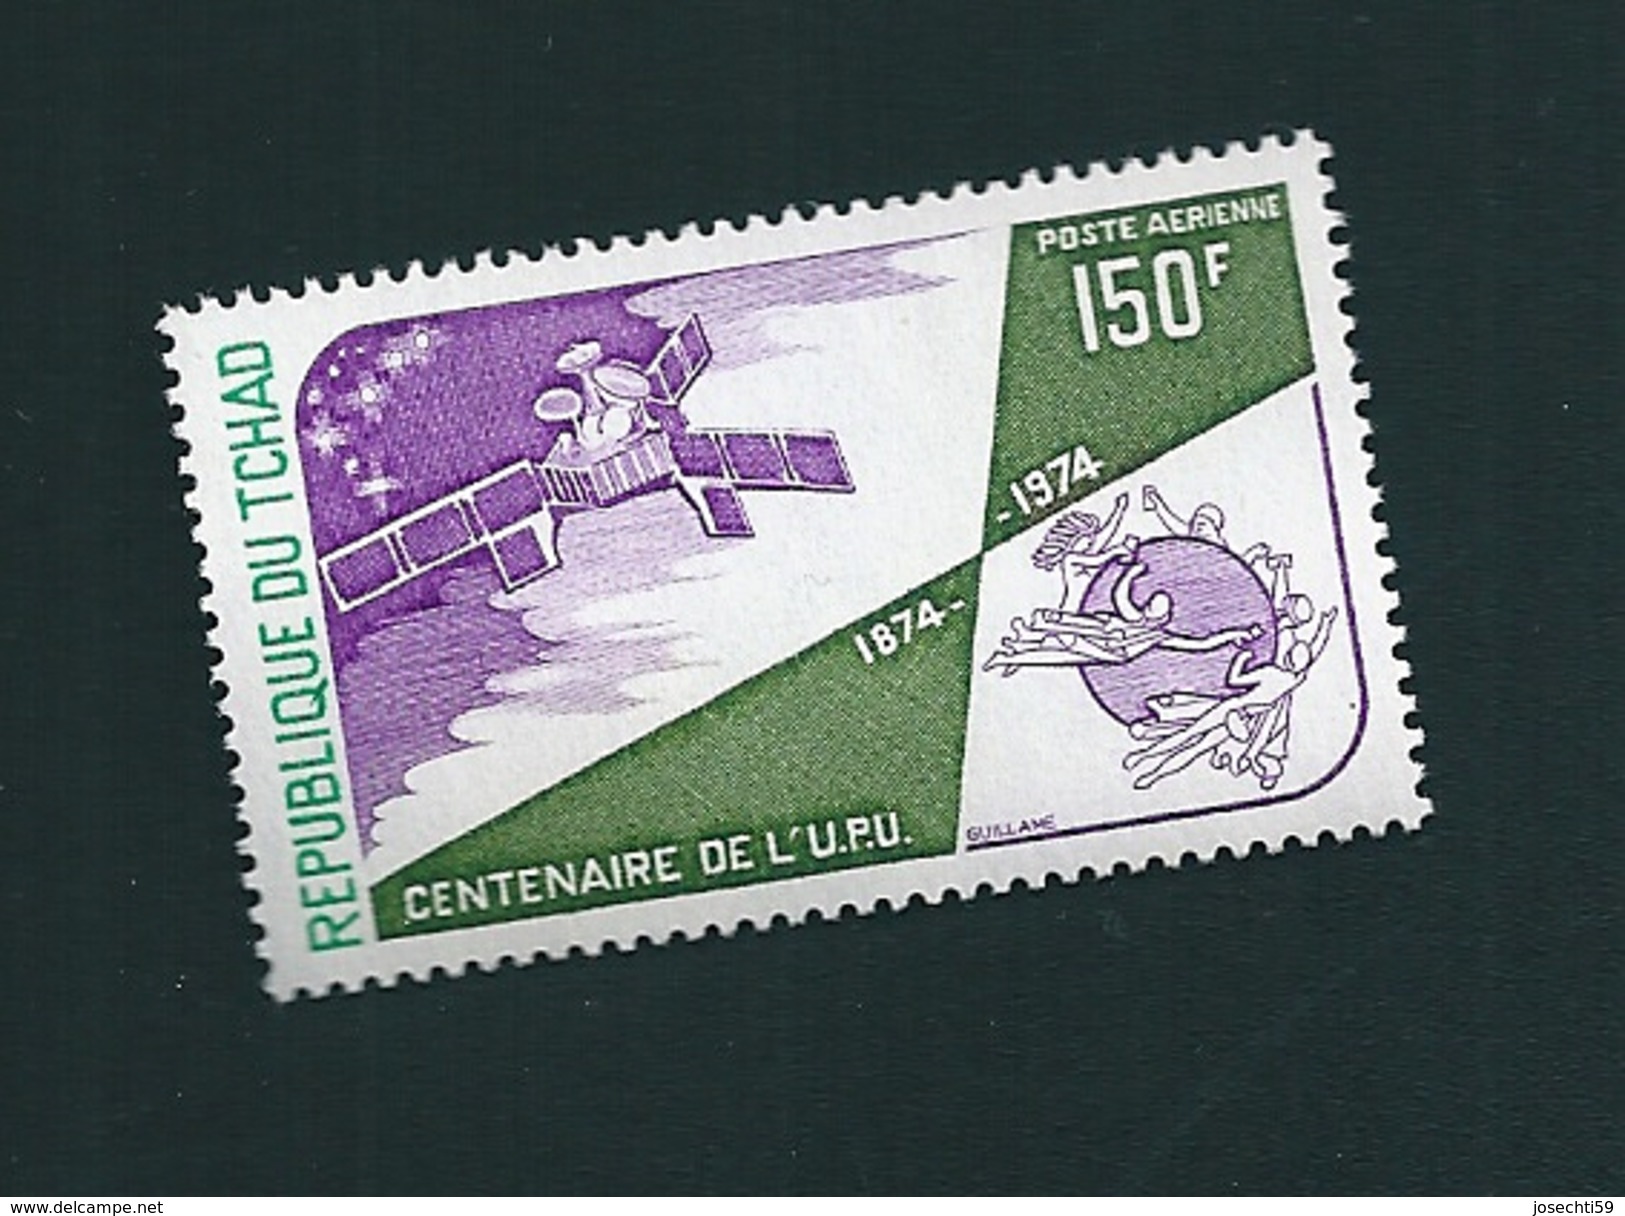 N° 155 Centenaire De L'UPU Timbre Tchad (1974) Neuf Poste Aérienne - Chad (1960-...)